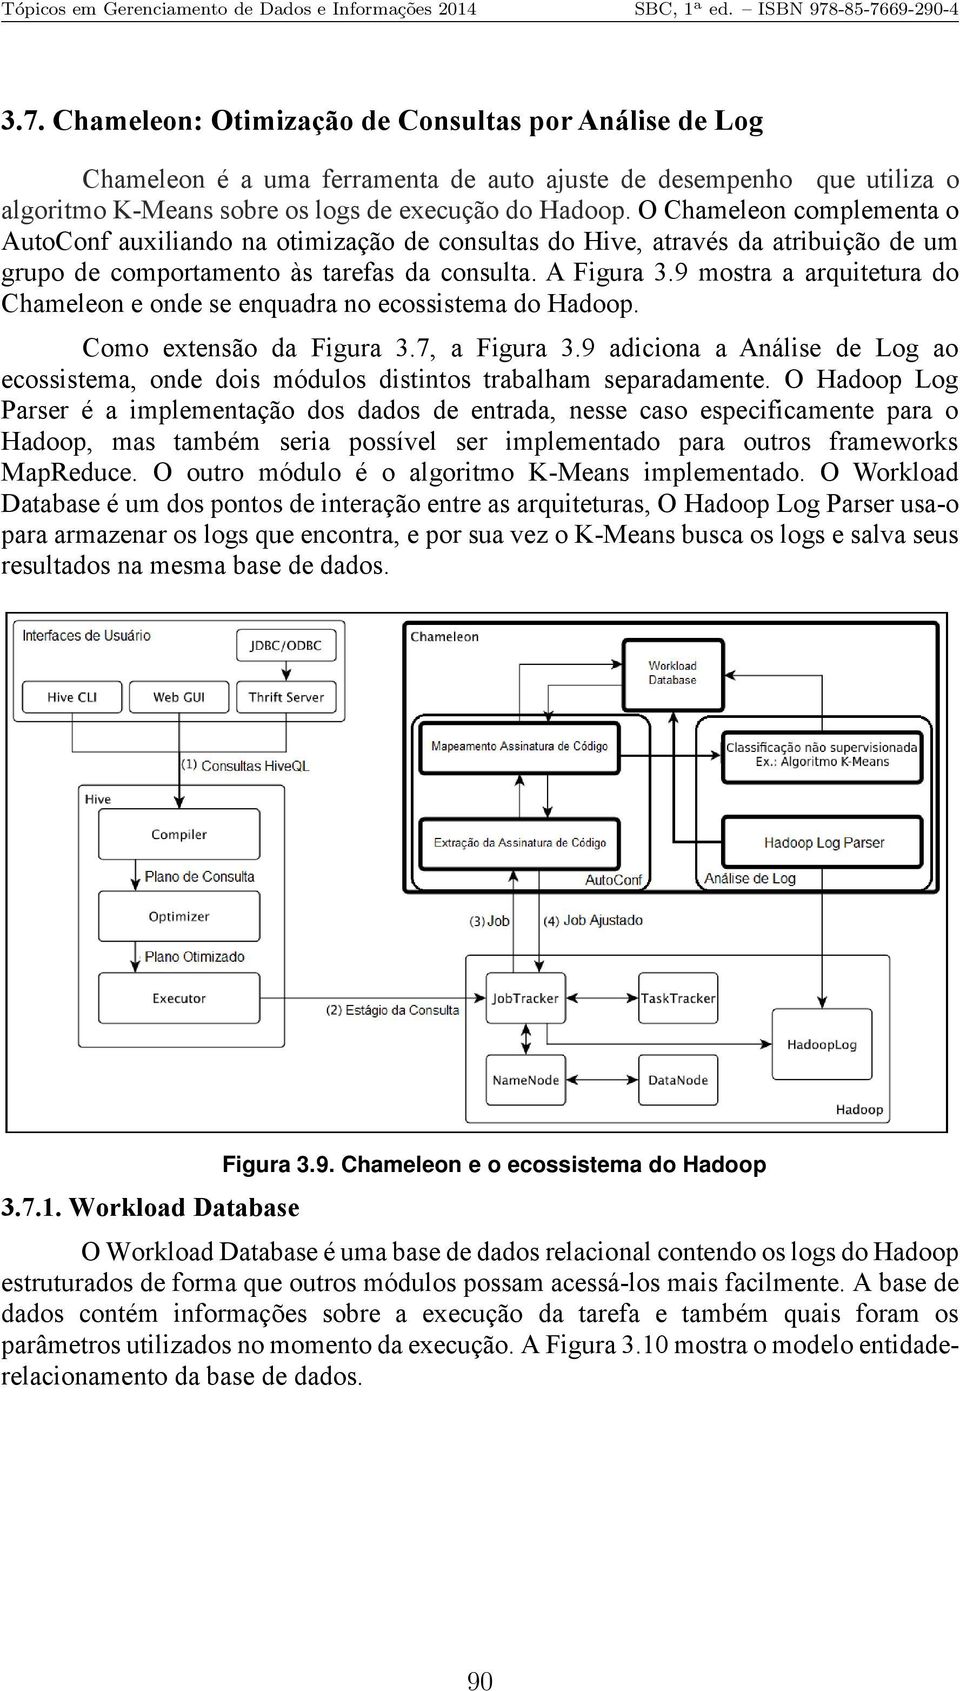 9 mostra a arquitetura do Chameleon e onde se enquadra no ecossistema do Hadoop. Como extensão da Figura 3.7, a Figura 3.